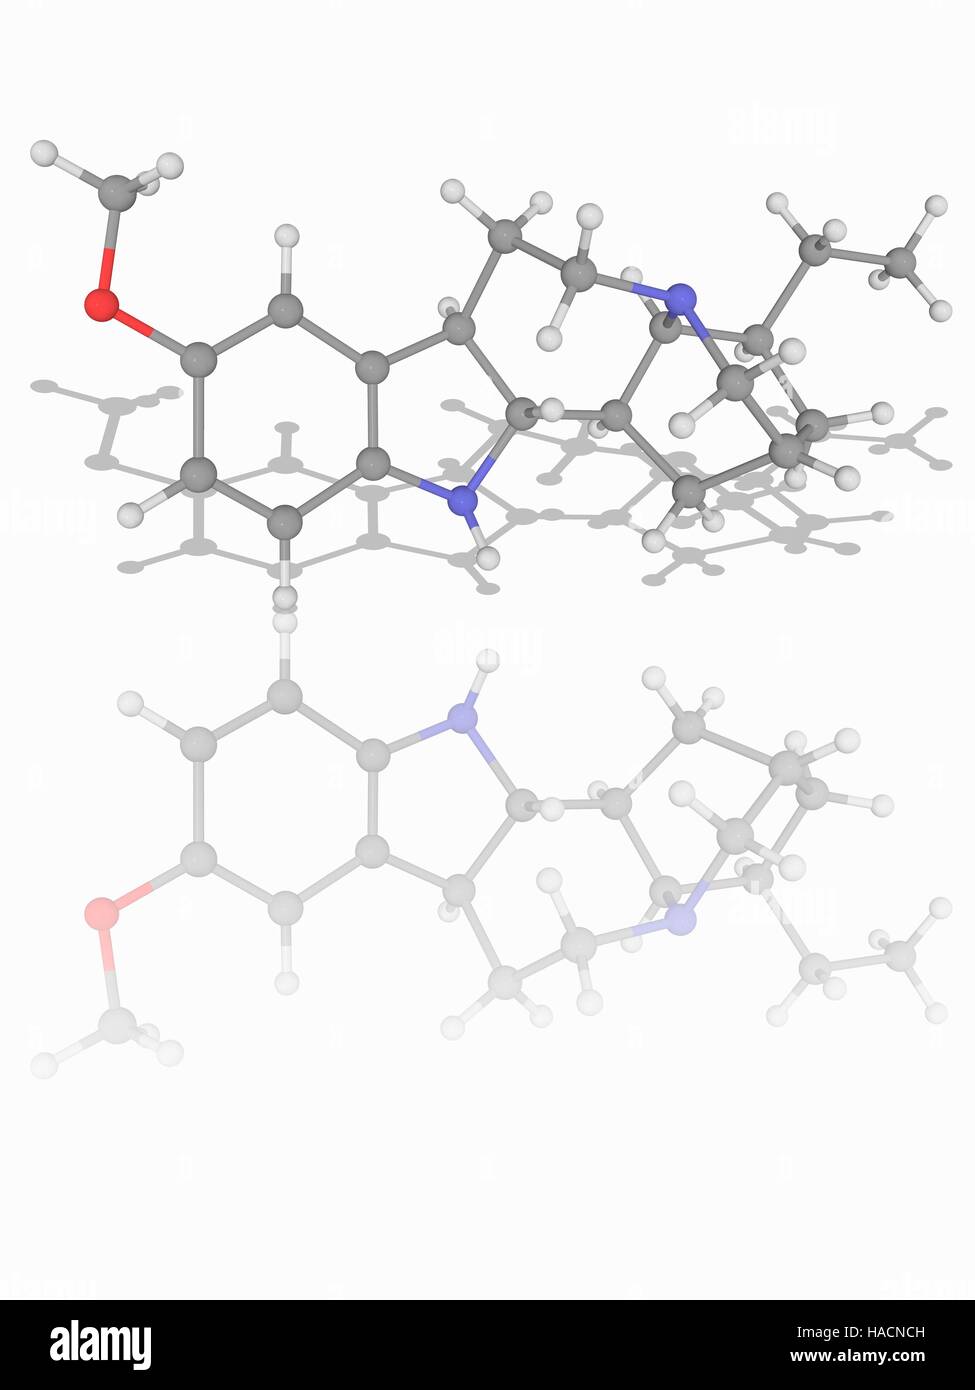 Ibogaina. Il modello molecolare del farmaco ibogaina (C20.H26.N2.O). Questa è una naturale sostanza psicoattiva trovata in un certo numero di piante. Gli atomi sono rappresentati da sfere e sono codificati a colori: carbonio (grigio), Idrogeno (bianco), Azoto (blu) e ossigeno (rosso). Illustrazione. Foto Stock